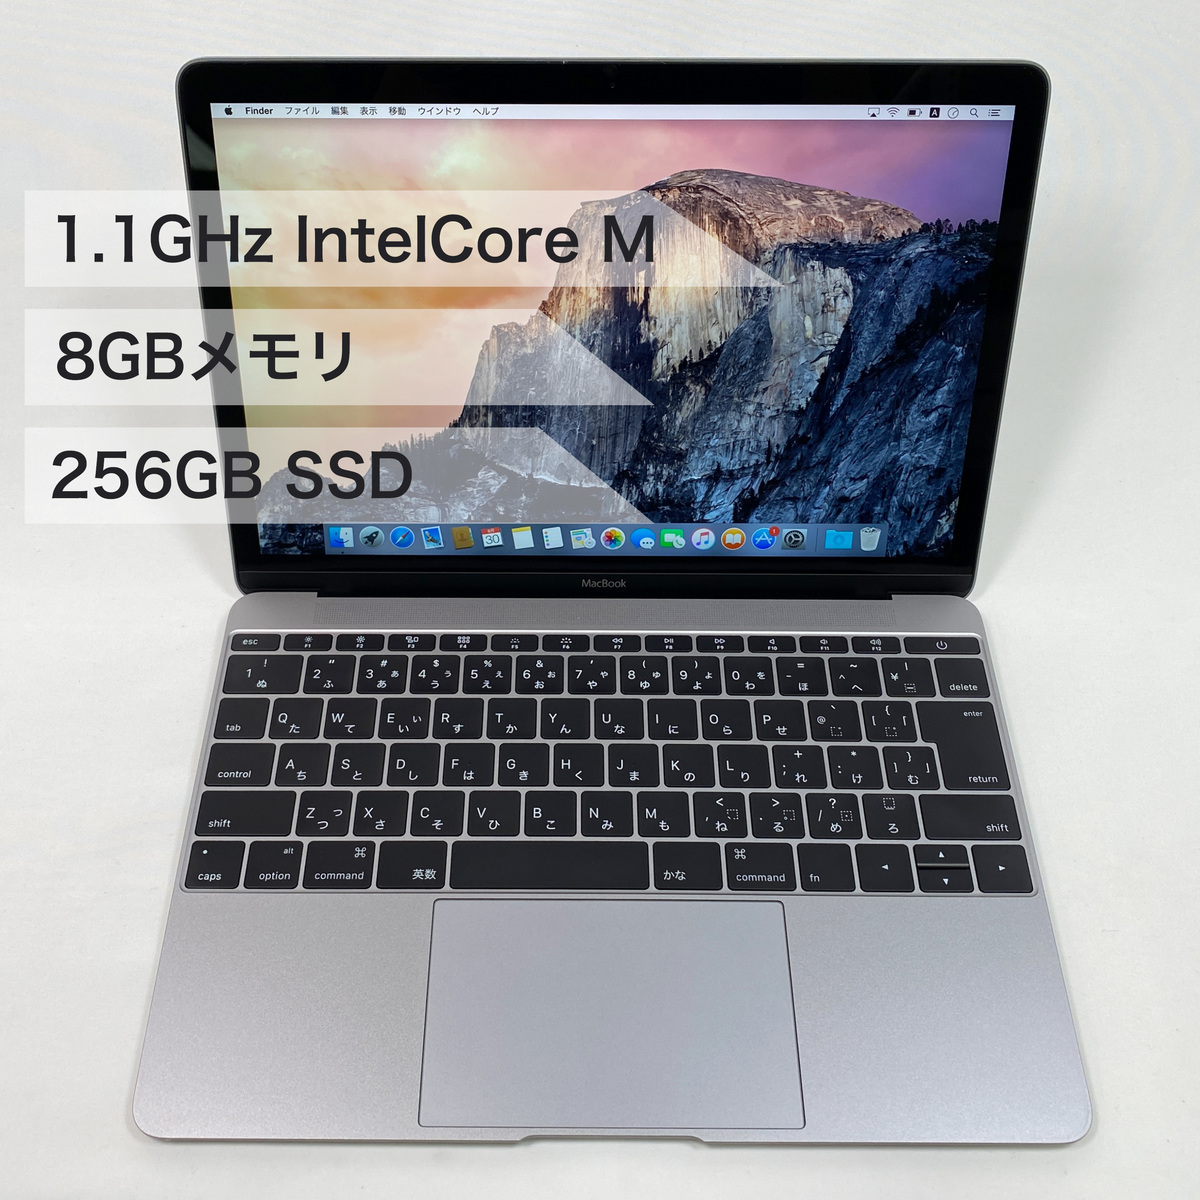 持ち運び楽々 中古 送料無料 30日保証 Apple ノートパソコン 日本製 MacBook 12インチ 2015年モデル Retinaディスプレイ デュアルコア ※本体のみ M スペースグレイ Yosemite 搭載 SSD:256GB 10.10 Core メモリ8GB X 人気ブレゼント OS